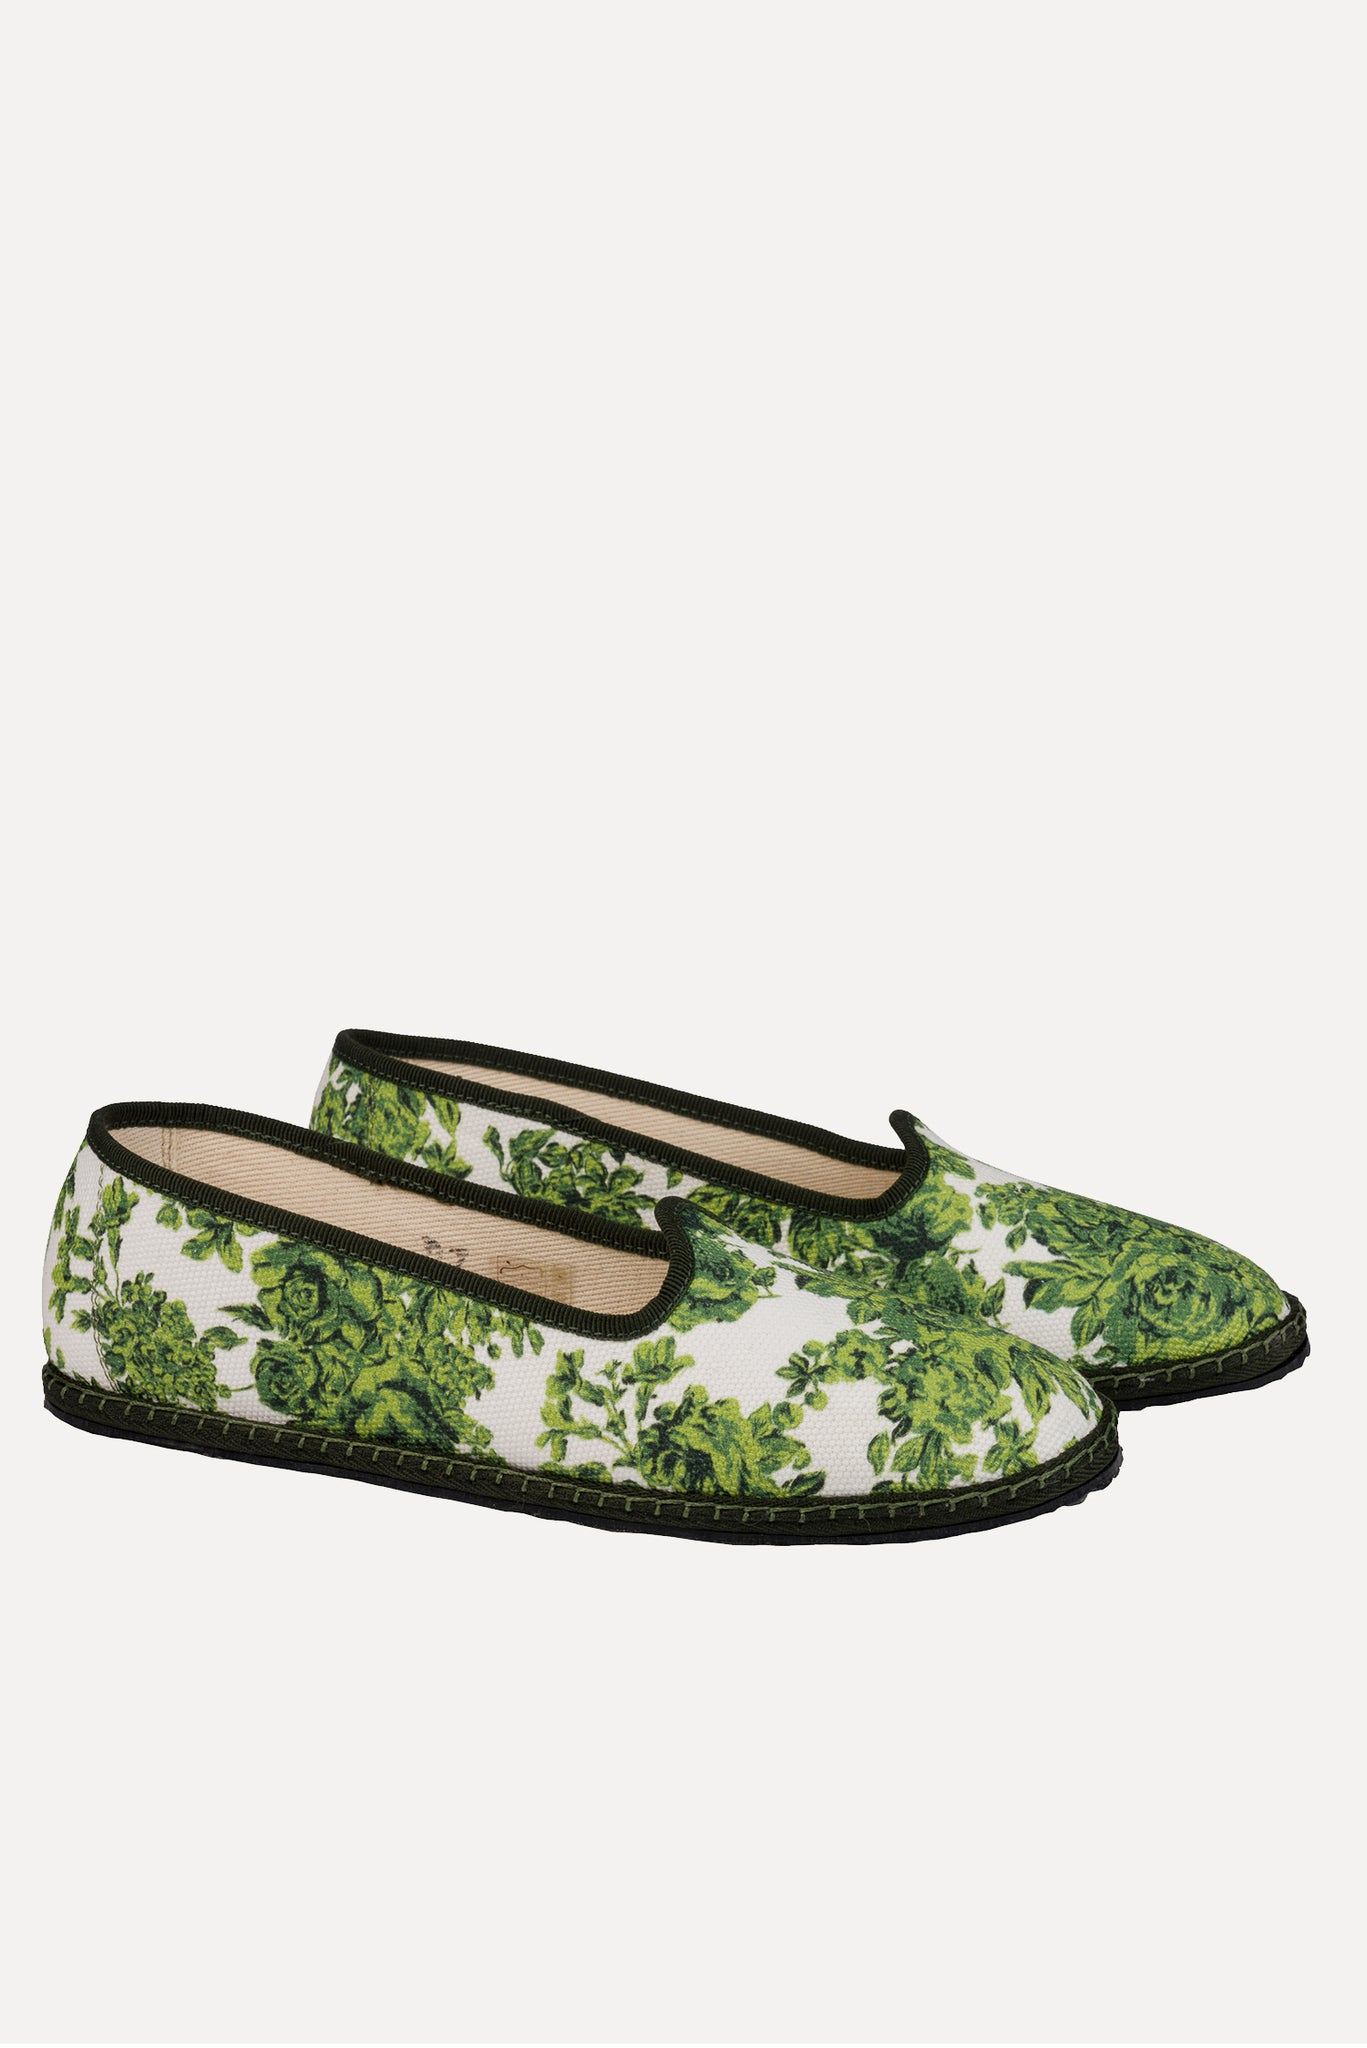 Classic Shoe | Emilia Wickstead x Vibi Venezia Green Rose Garden Print Shoe | Emilia Wickstead